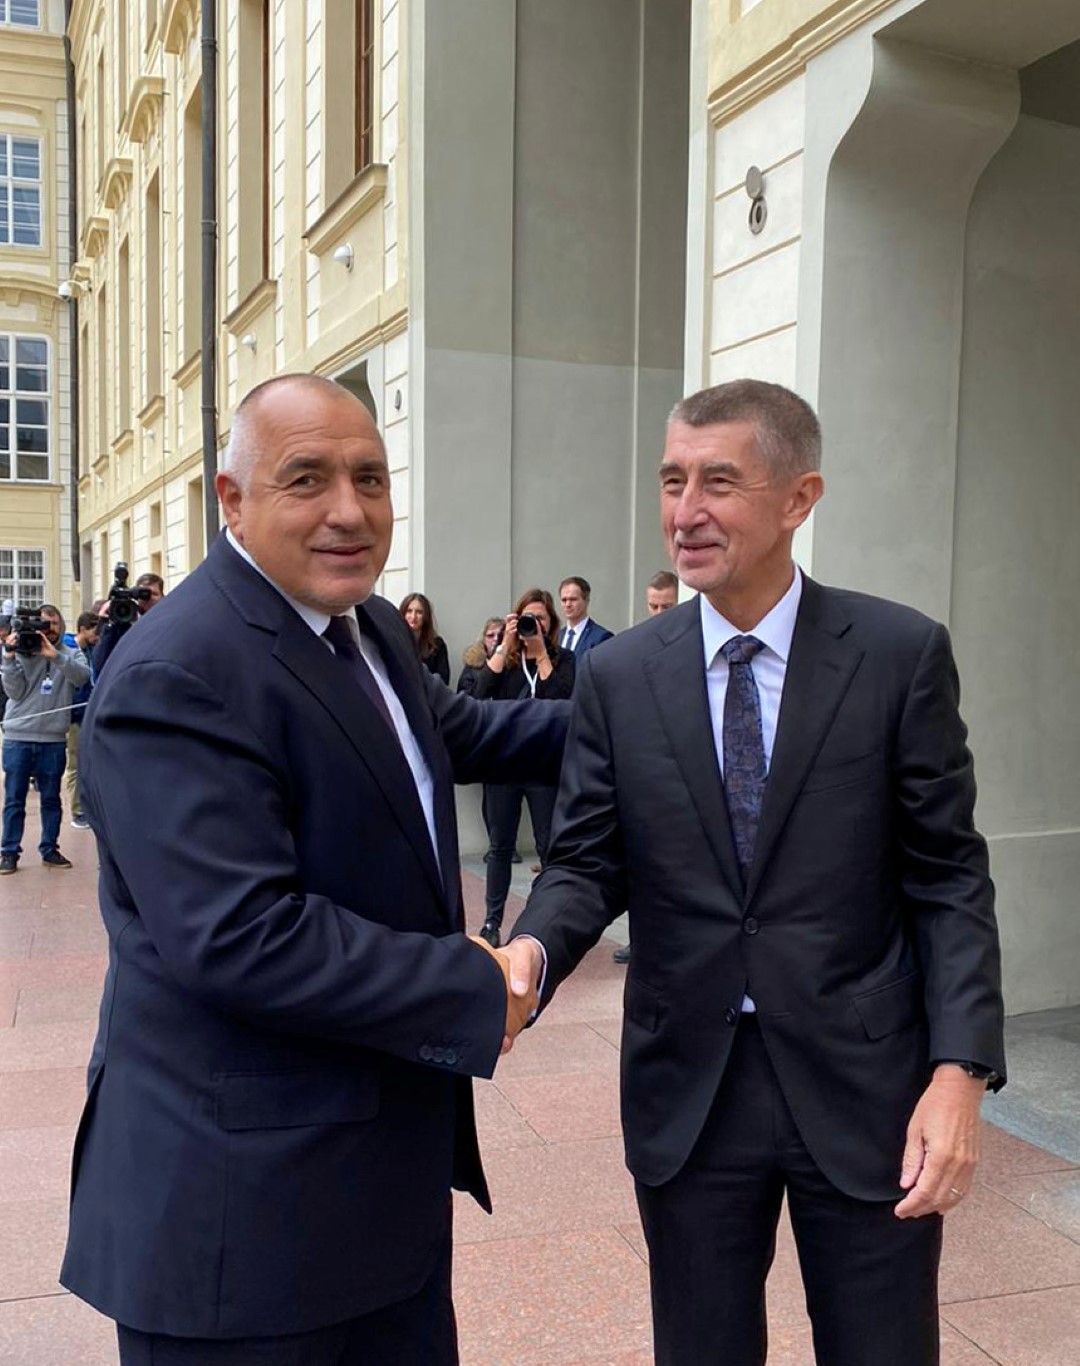 На форума българският премиер Борисов бе посрещнат от домакина - министър-председателят на Чешката република Андрей Бабиш